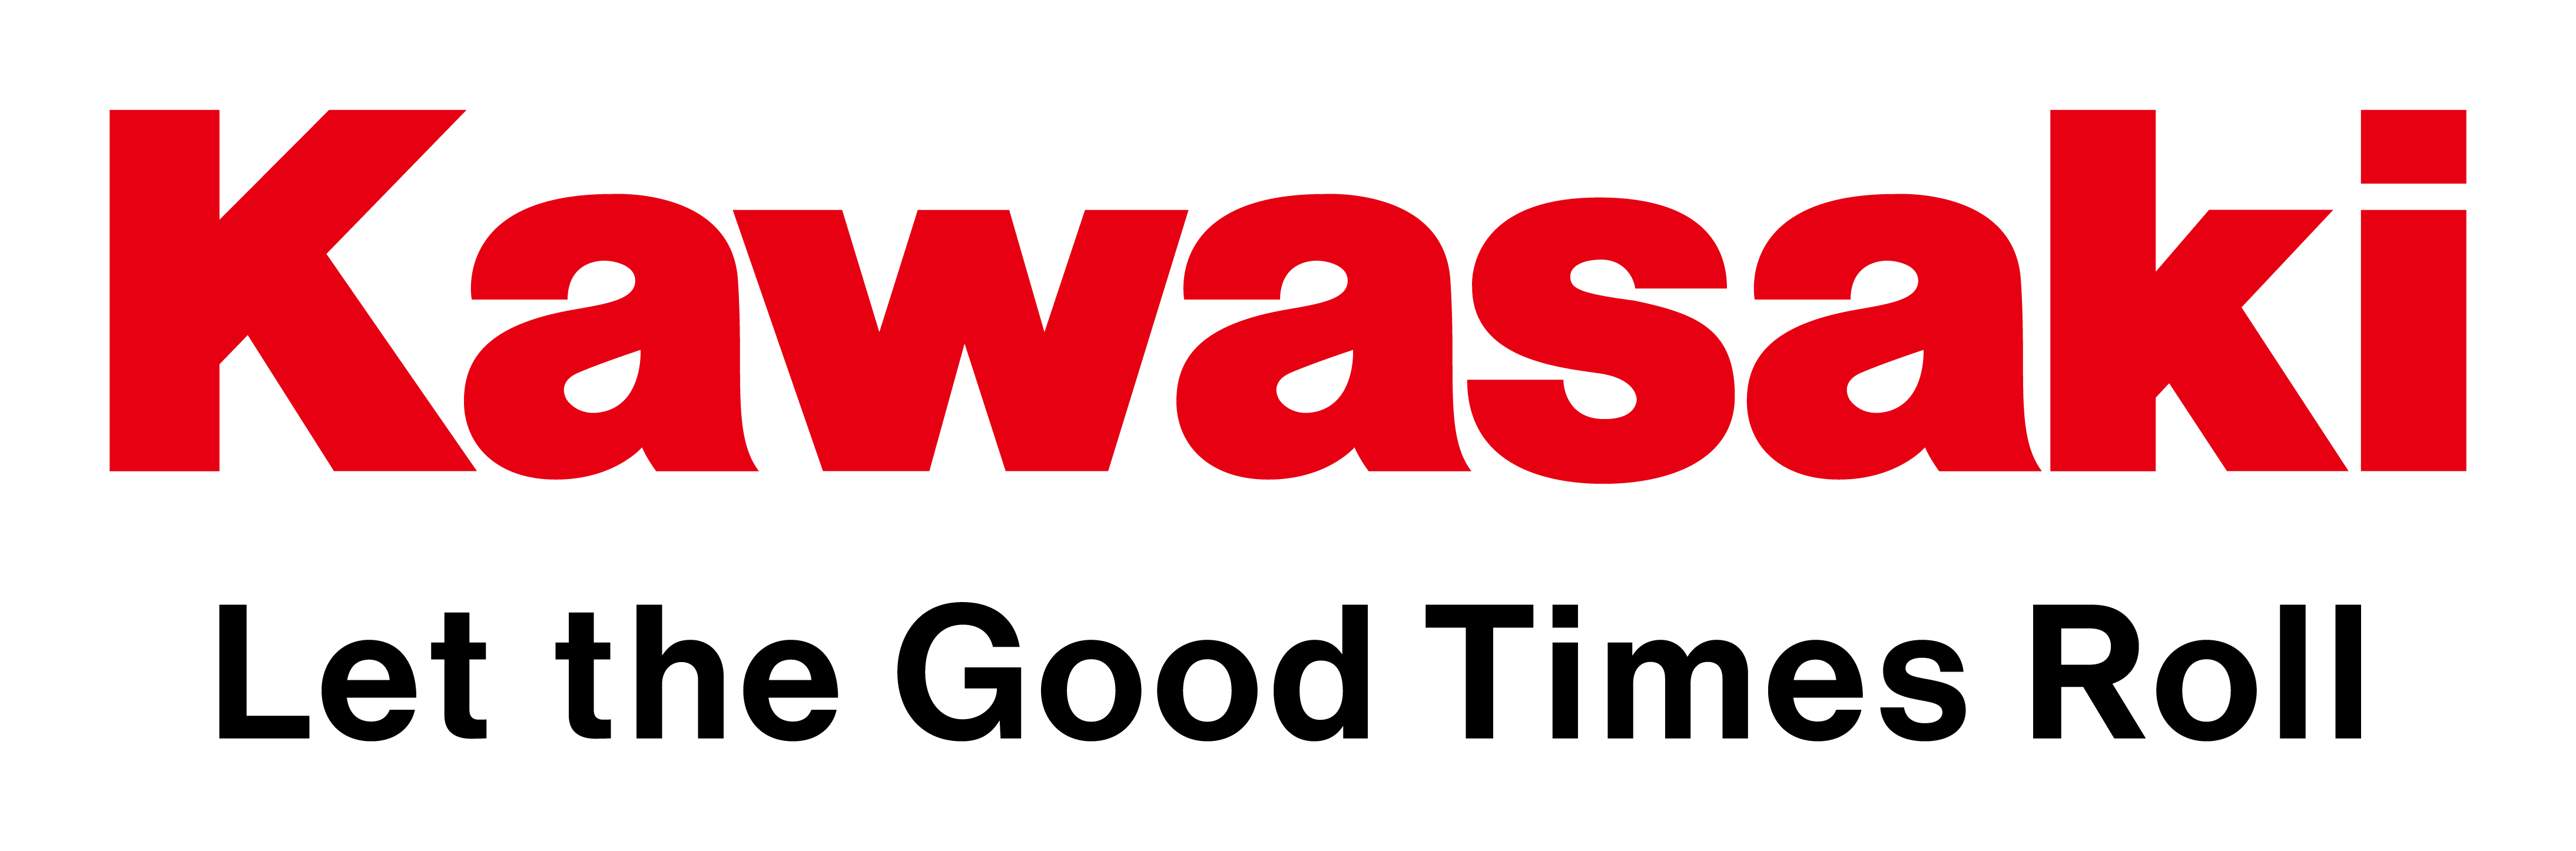 kaswasaki